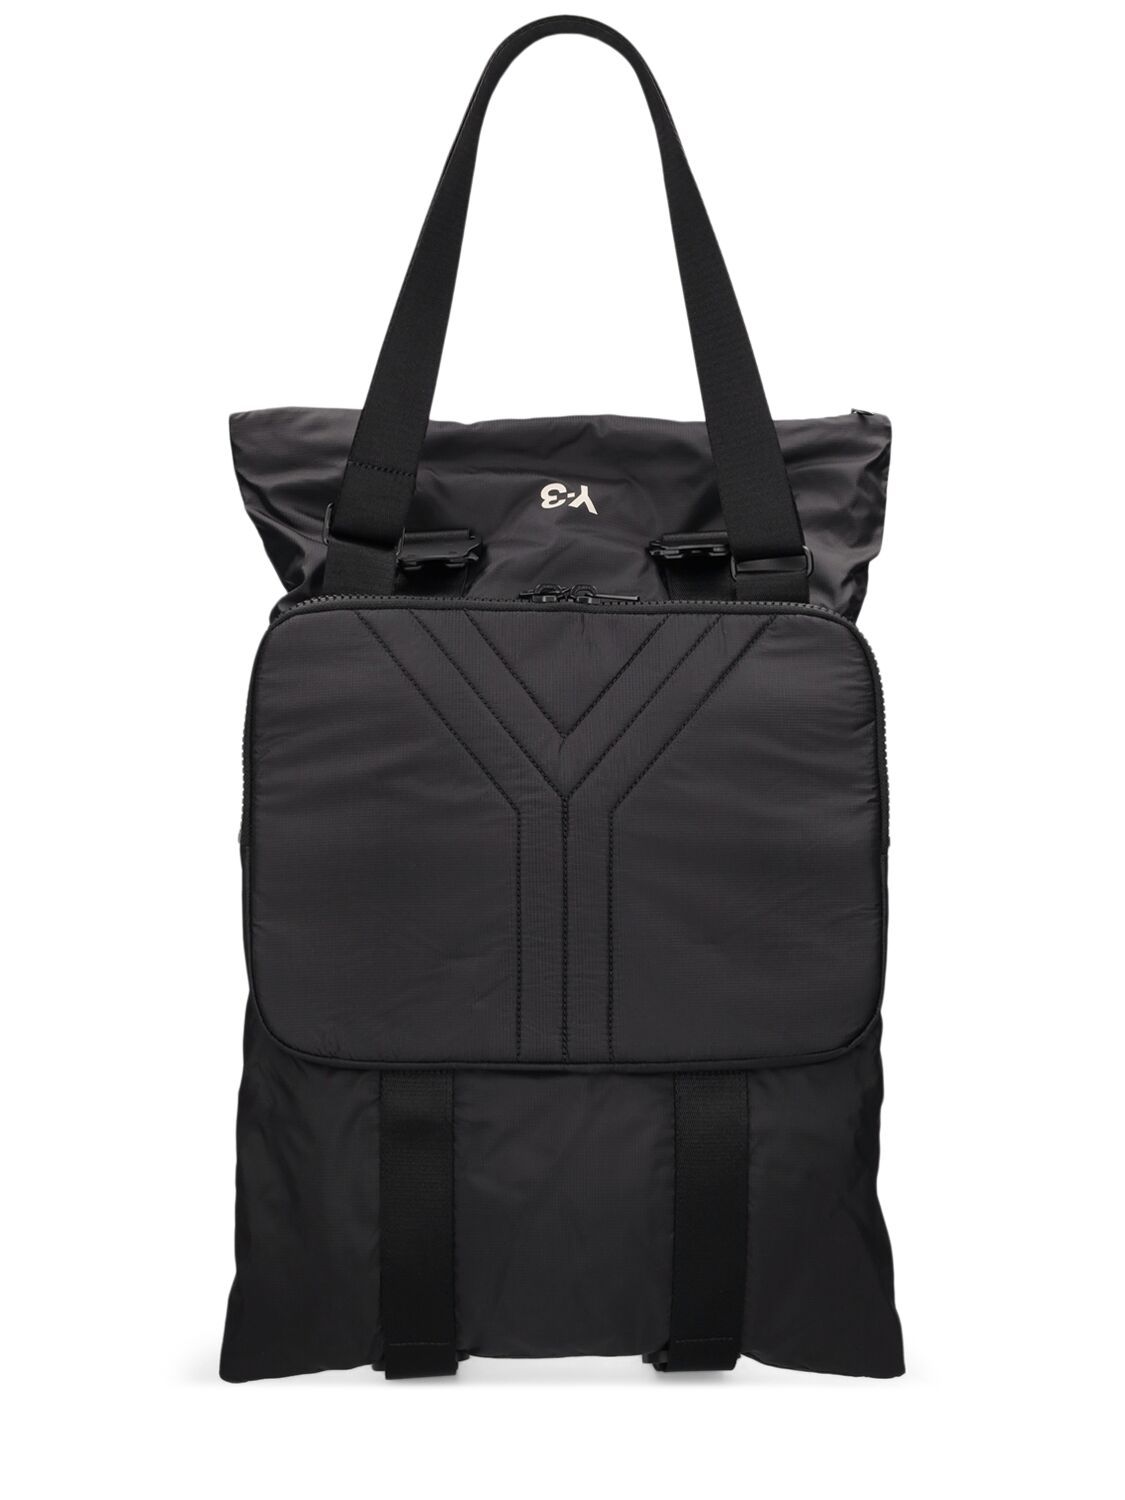 Shop Y-3 Cn Body Bag In Black